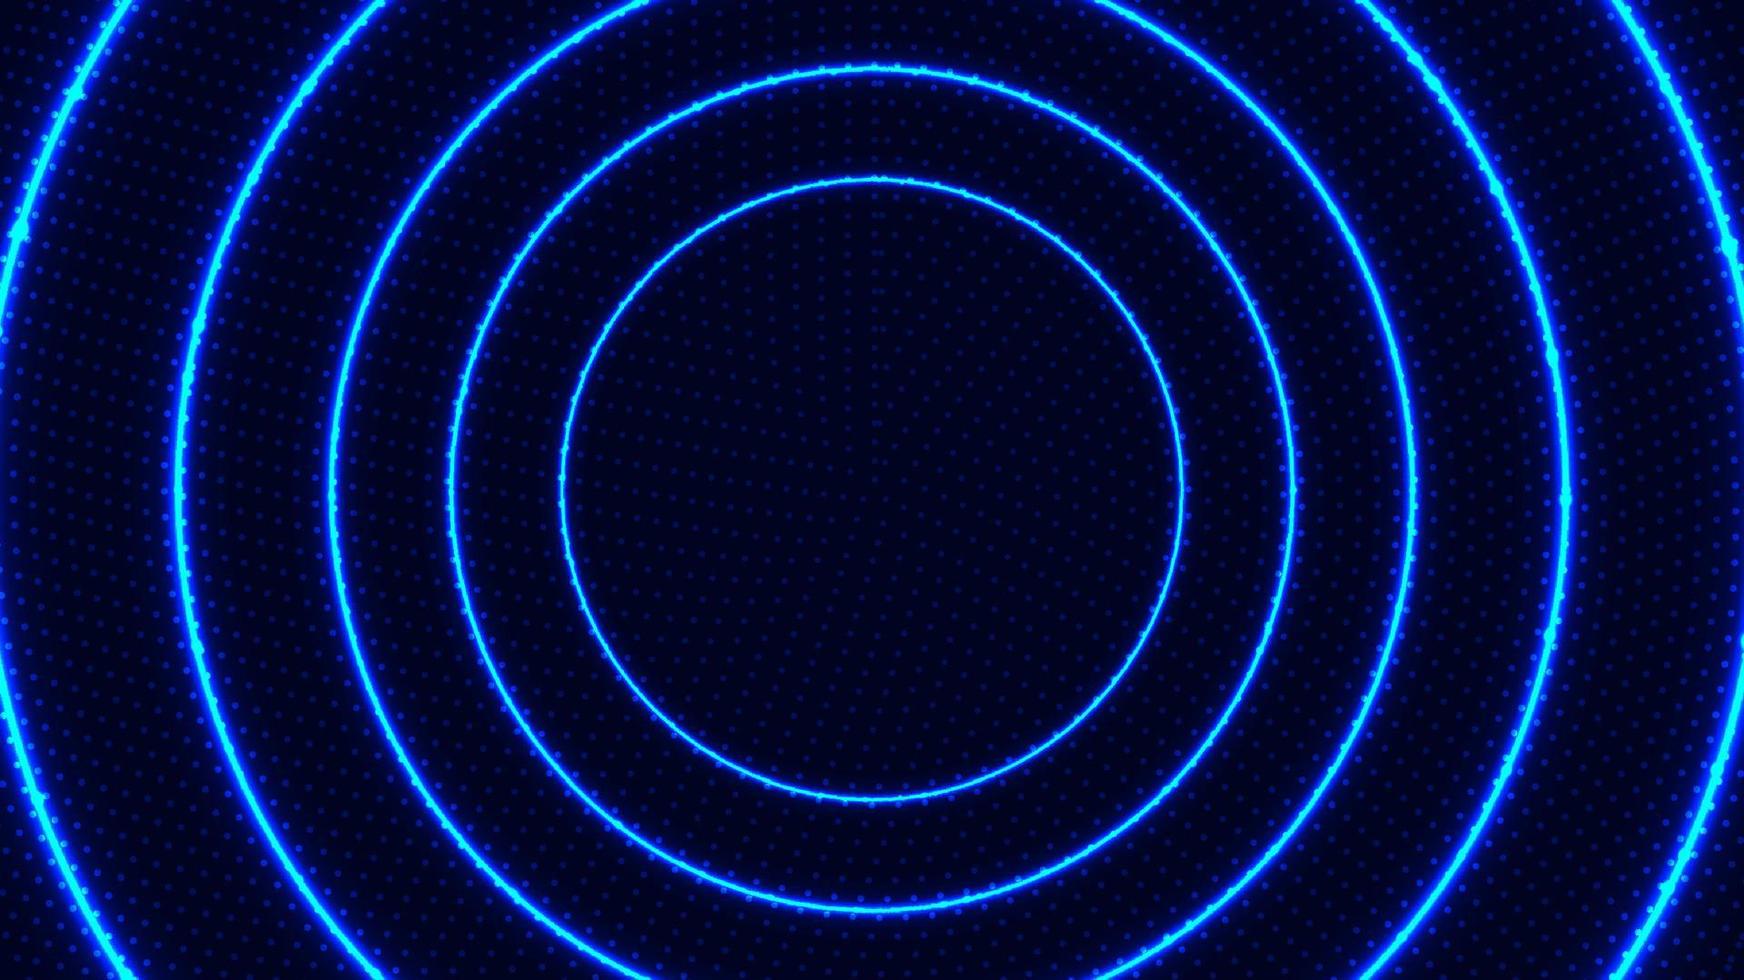 linee di movimento radiali astratte cerchi blu luce al neon luminosa effetto luminoso energia raggi con punti particelle su sfondo scuro vettore